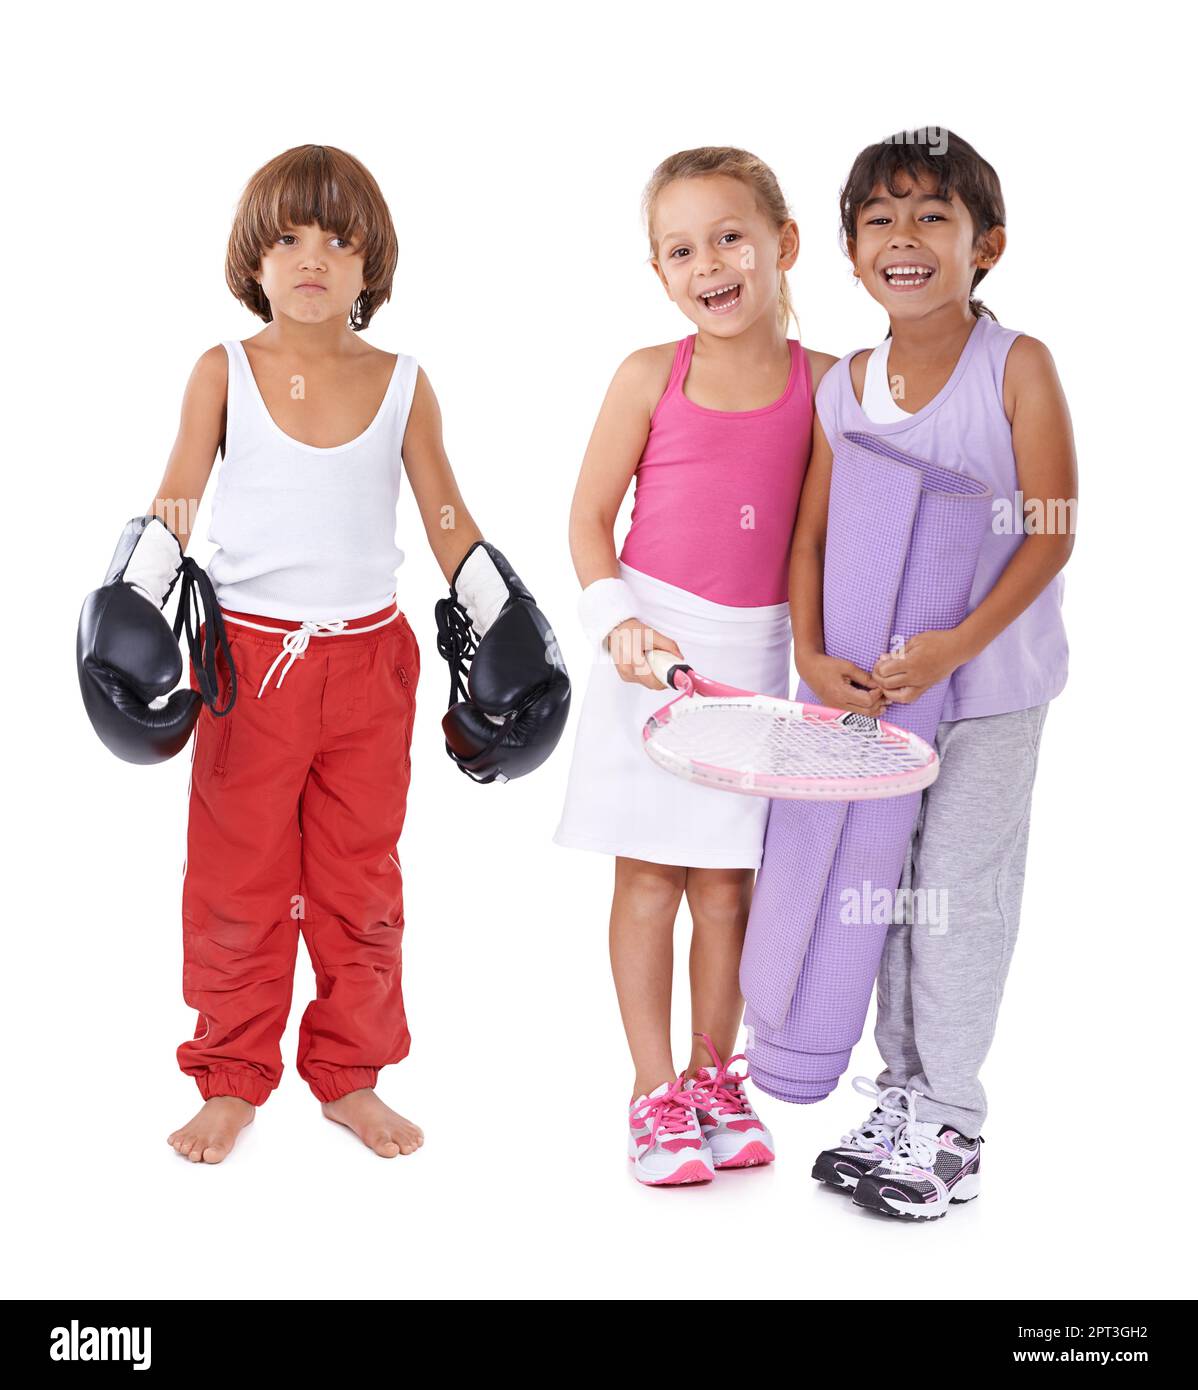 Tutti hanno una passione individuale. Un gruppo di tre bambini in vari abbigliamento sportivo Foto Stock